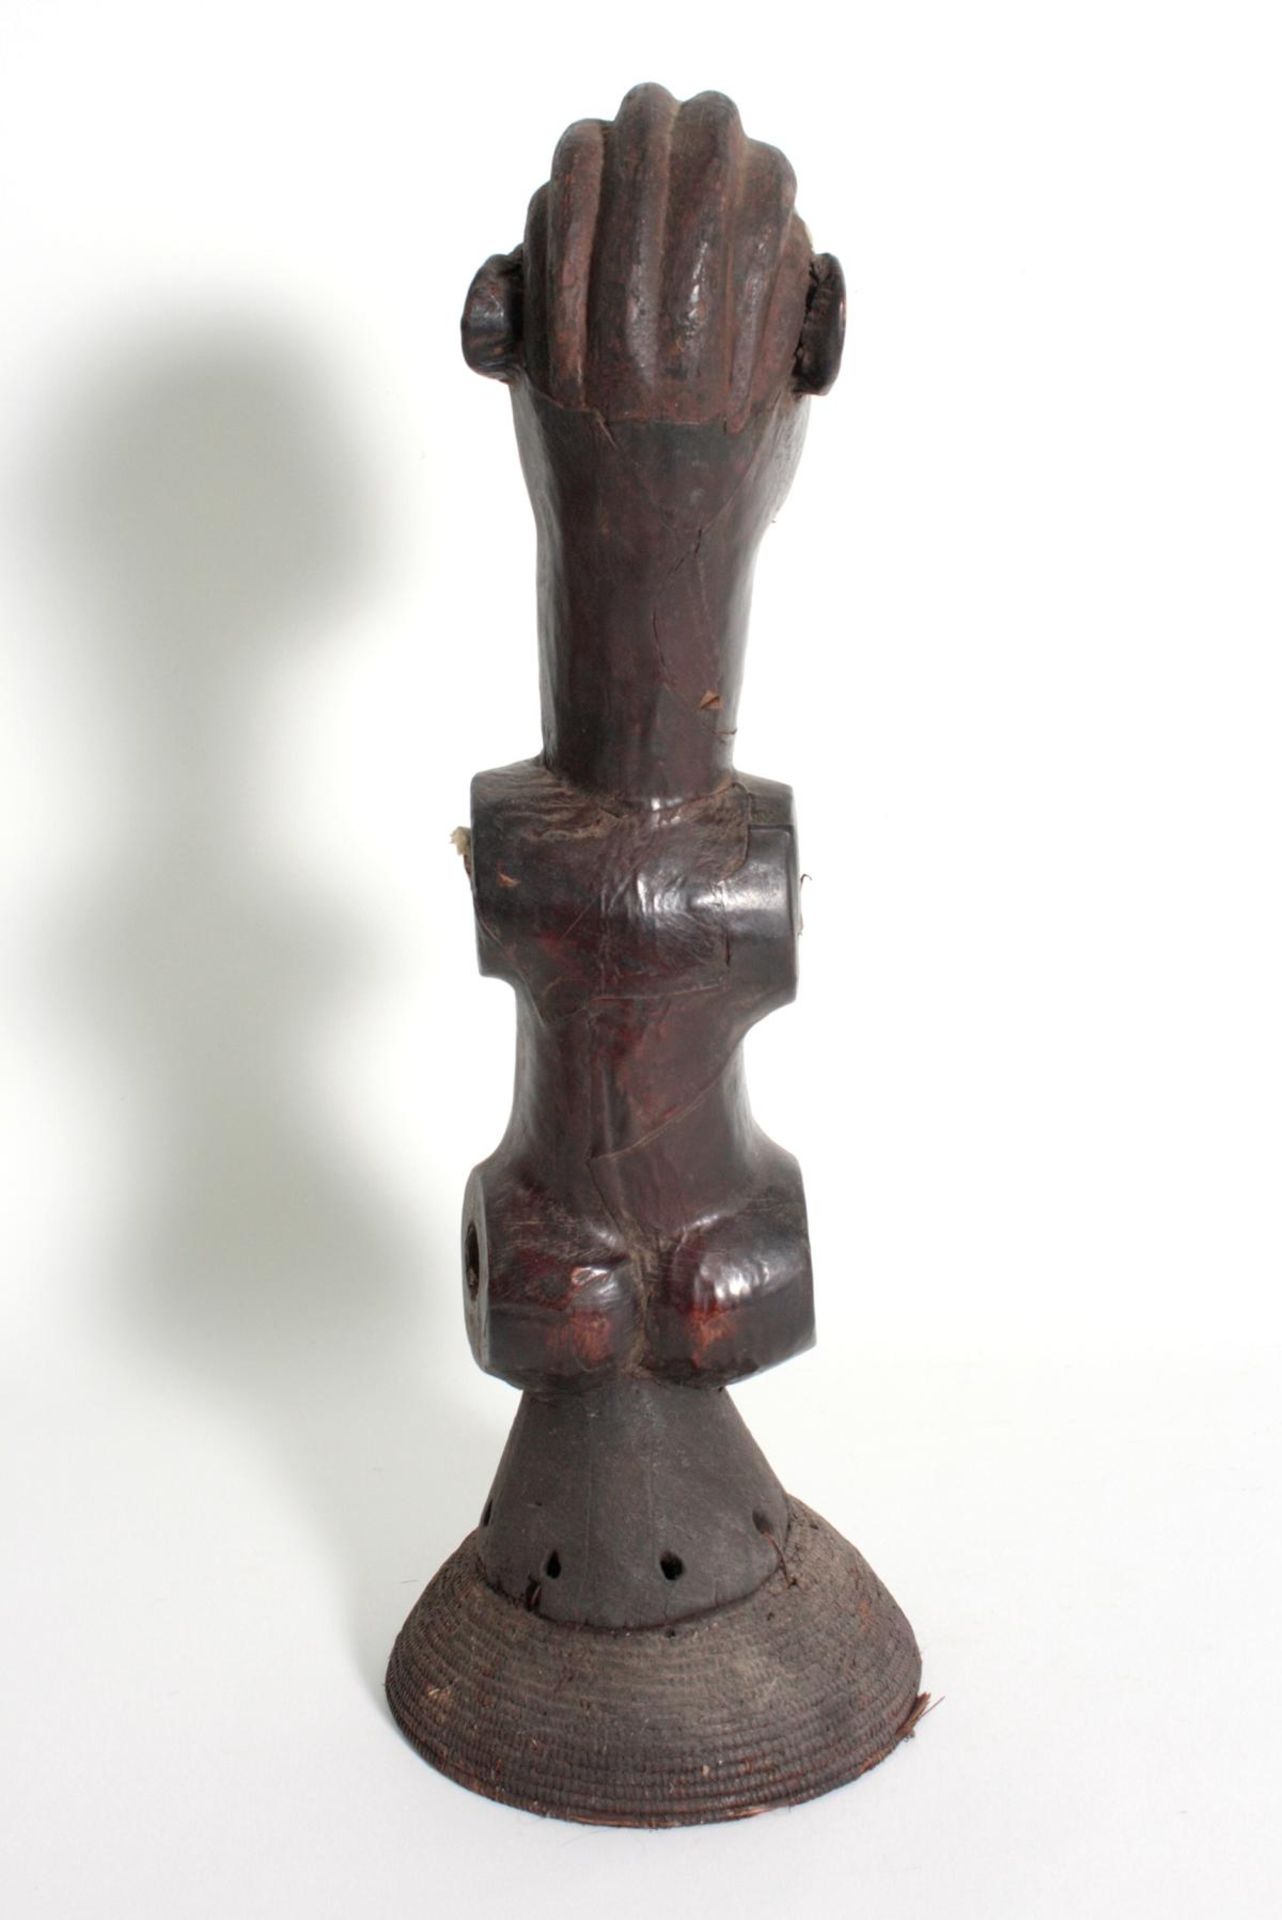 Anthropomorpher Tanzaufsatz, Nigeria. 1. Hälfte 20. Jh.Holz geschnitzt, mit Leder überzogen, - Bild 4 aus 6